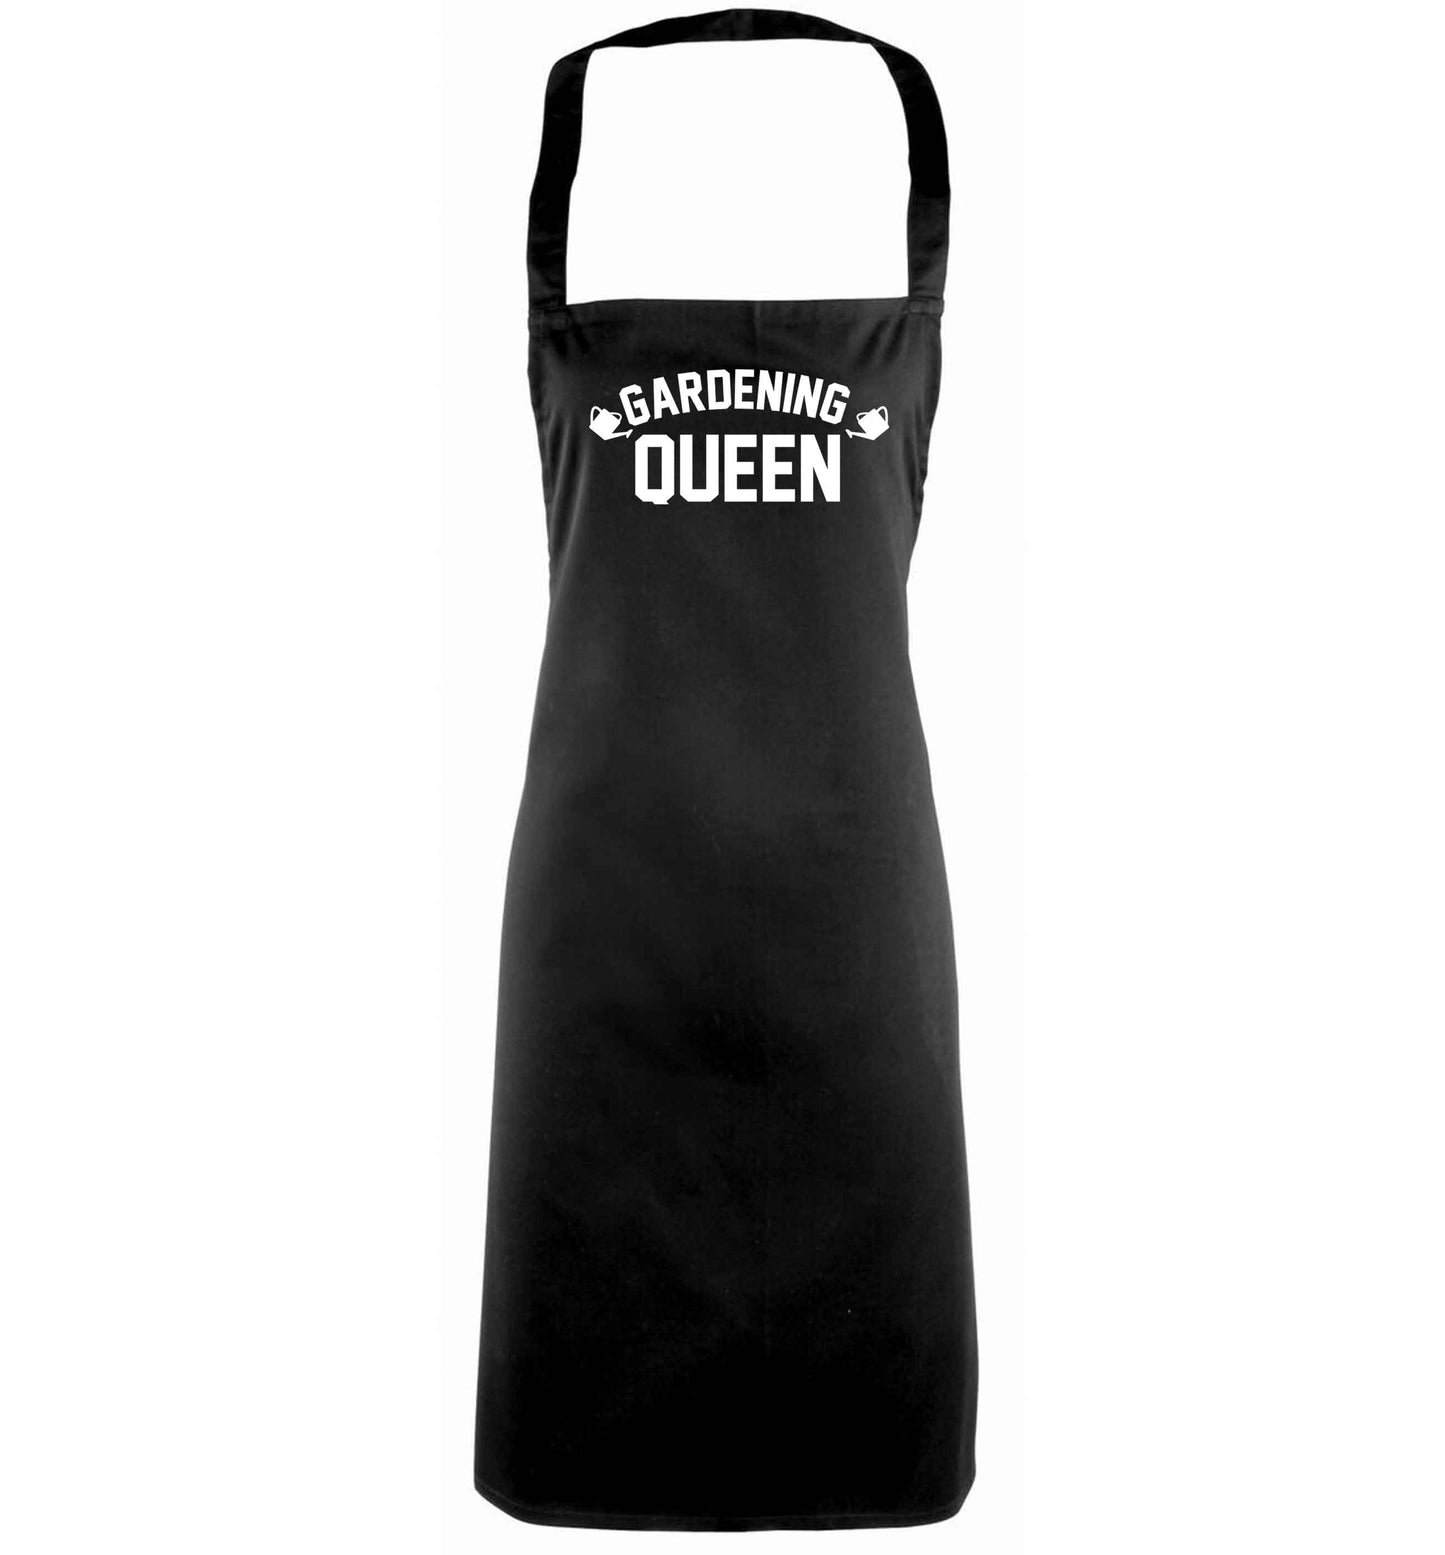 Gardening queen black apron